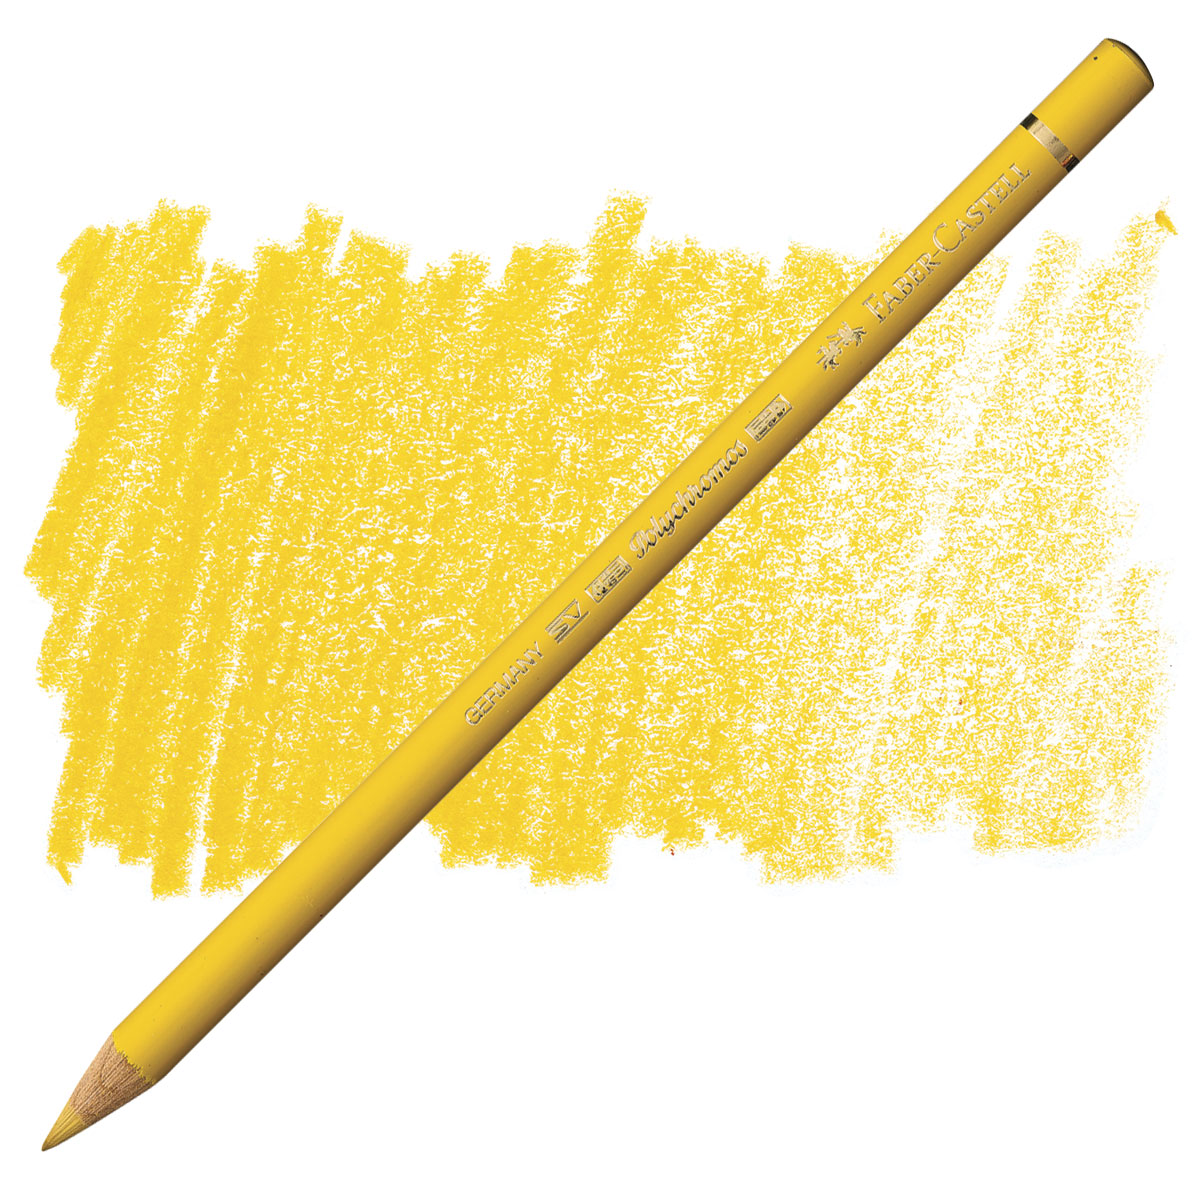 Faber Castell : Polychromos Pencil : Black